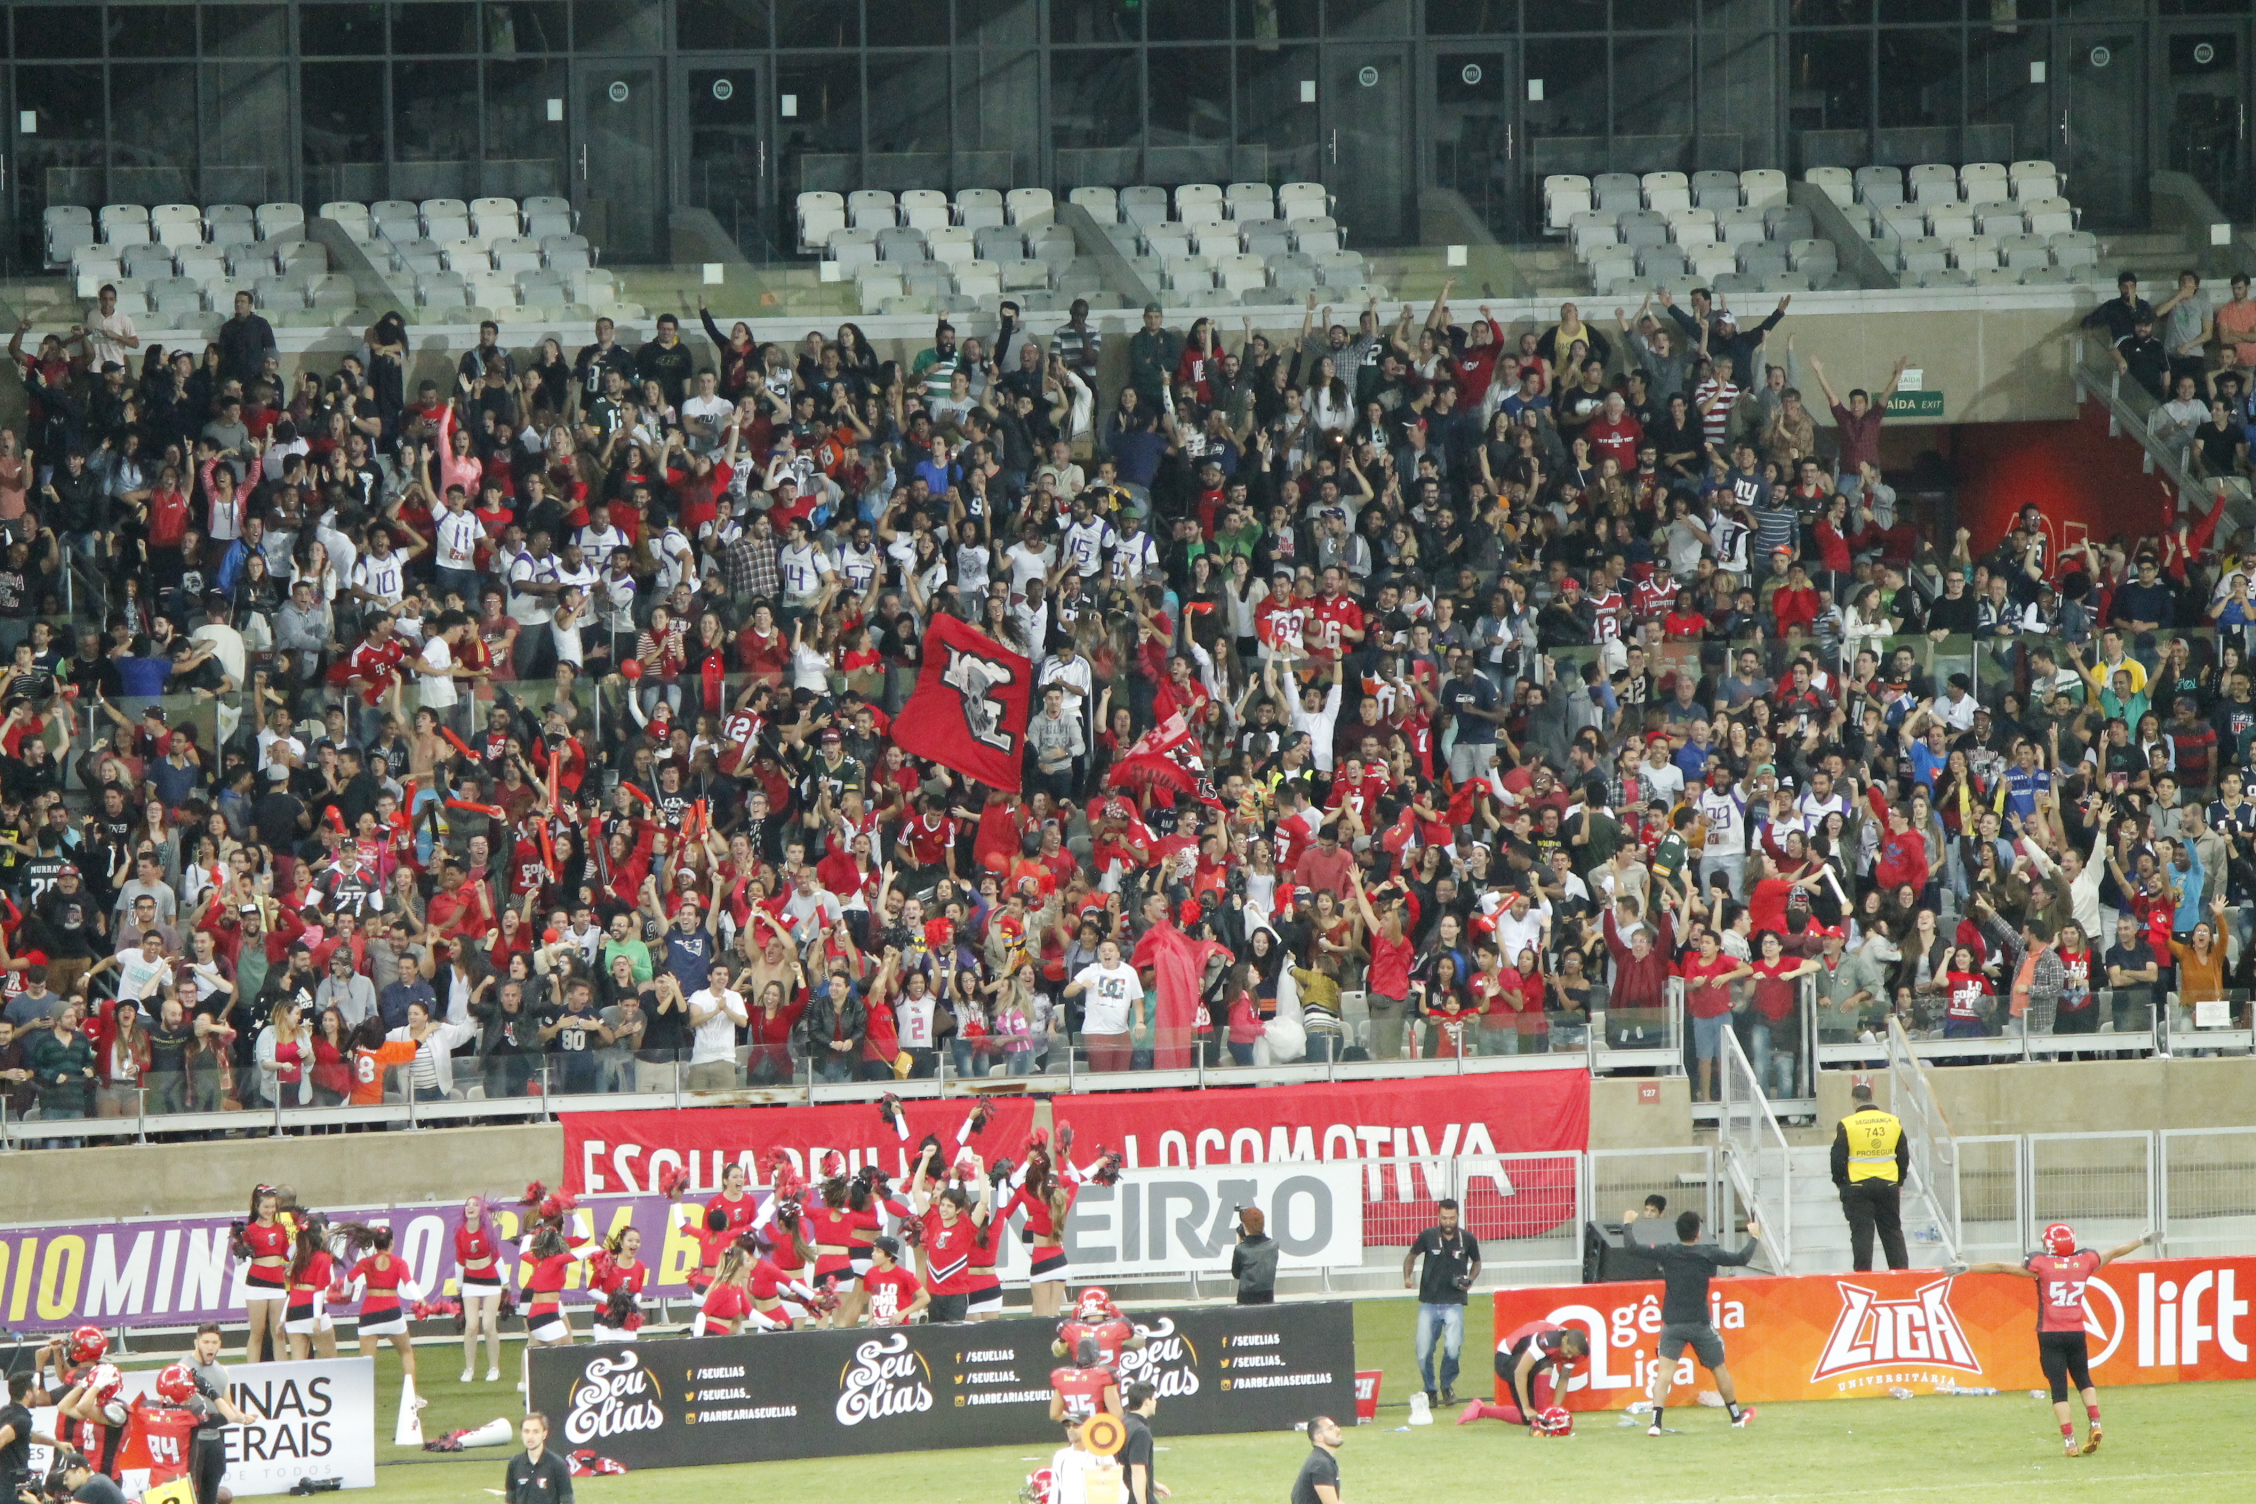 Torcida dos Reds agitando no Minas Bowl. FOTO: Bruno Santos / Start Sports